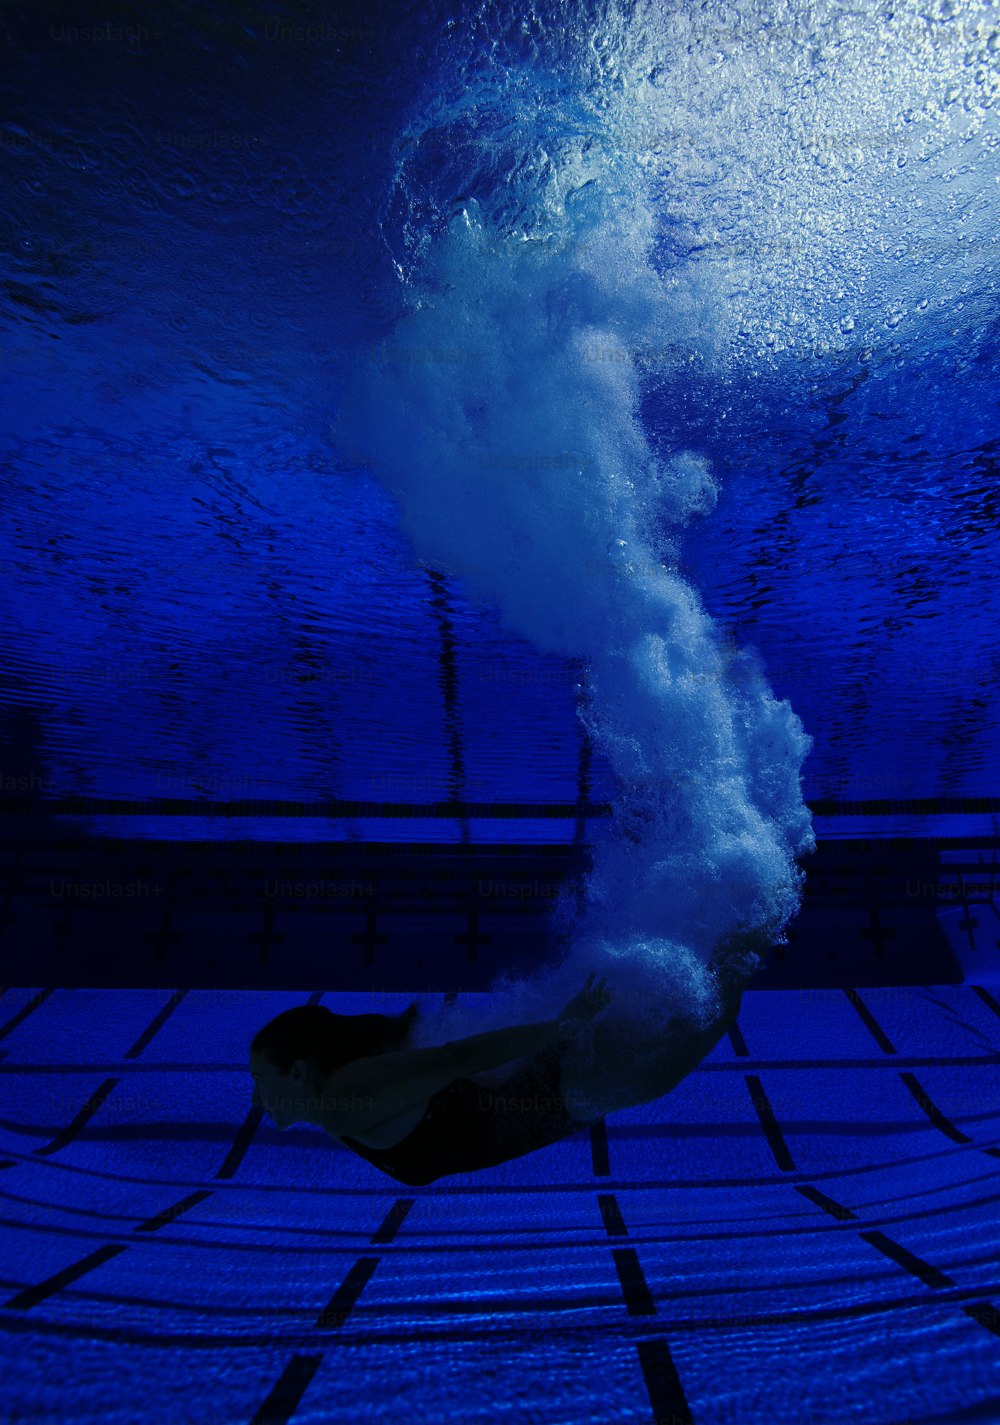 Vista subaquática do mergulhador que entra na água